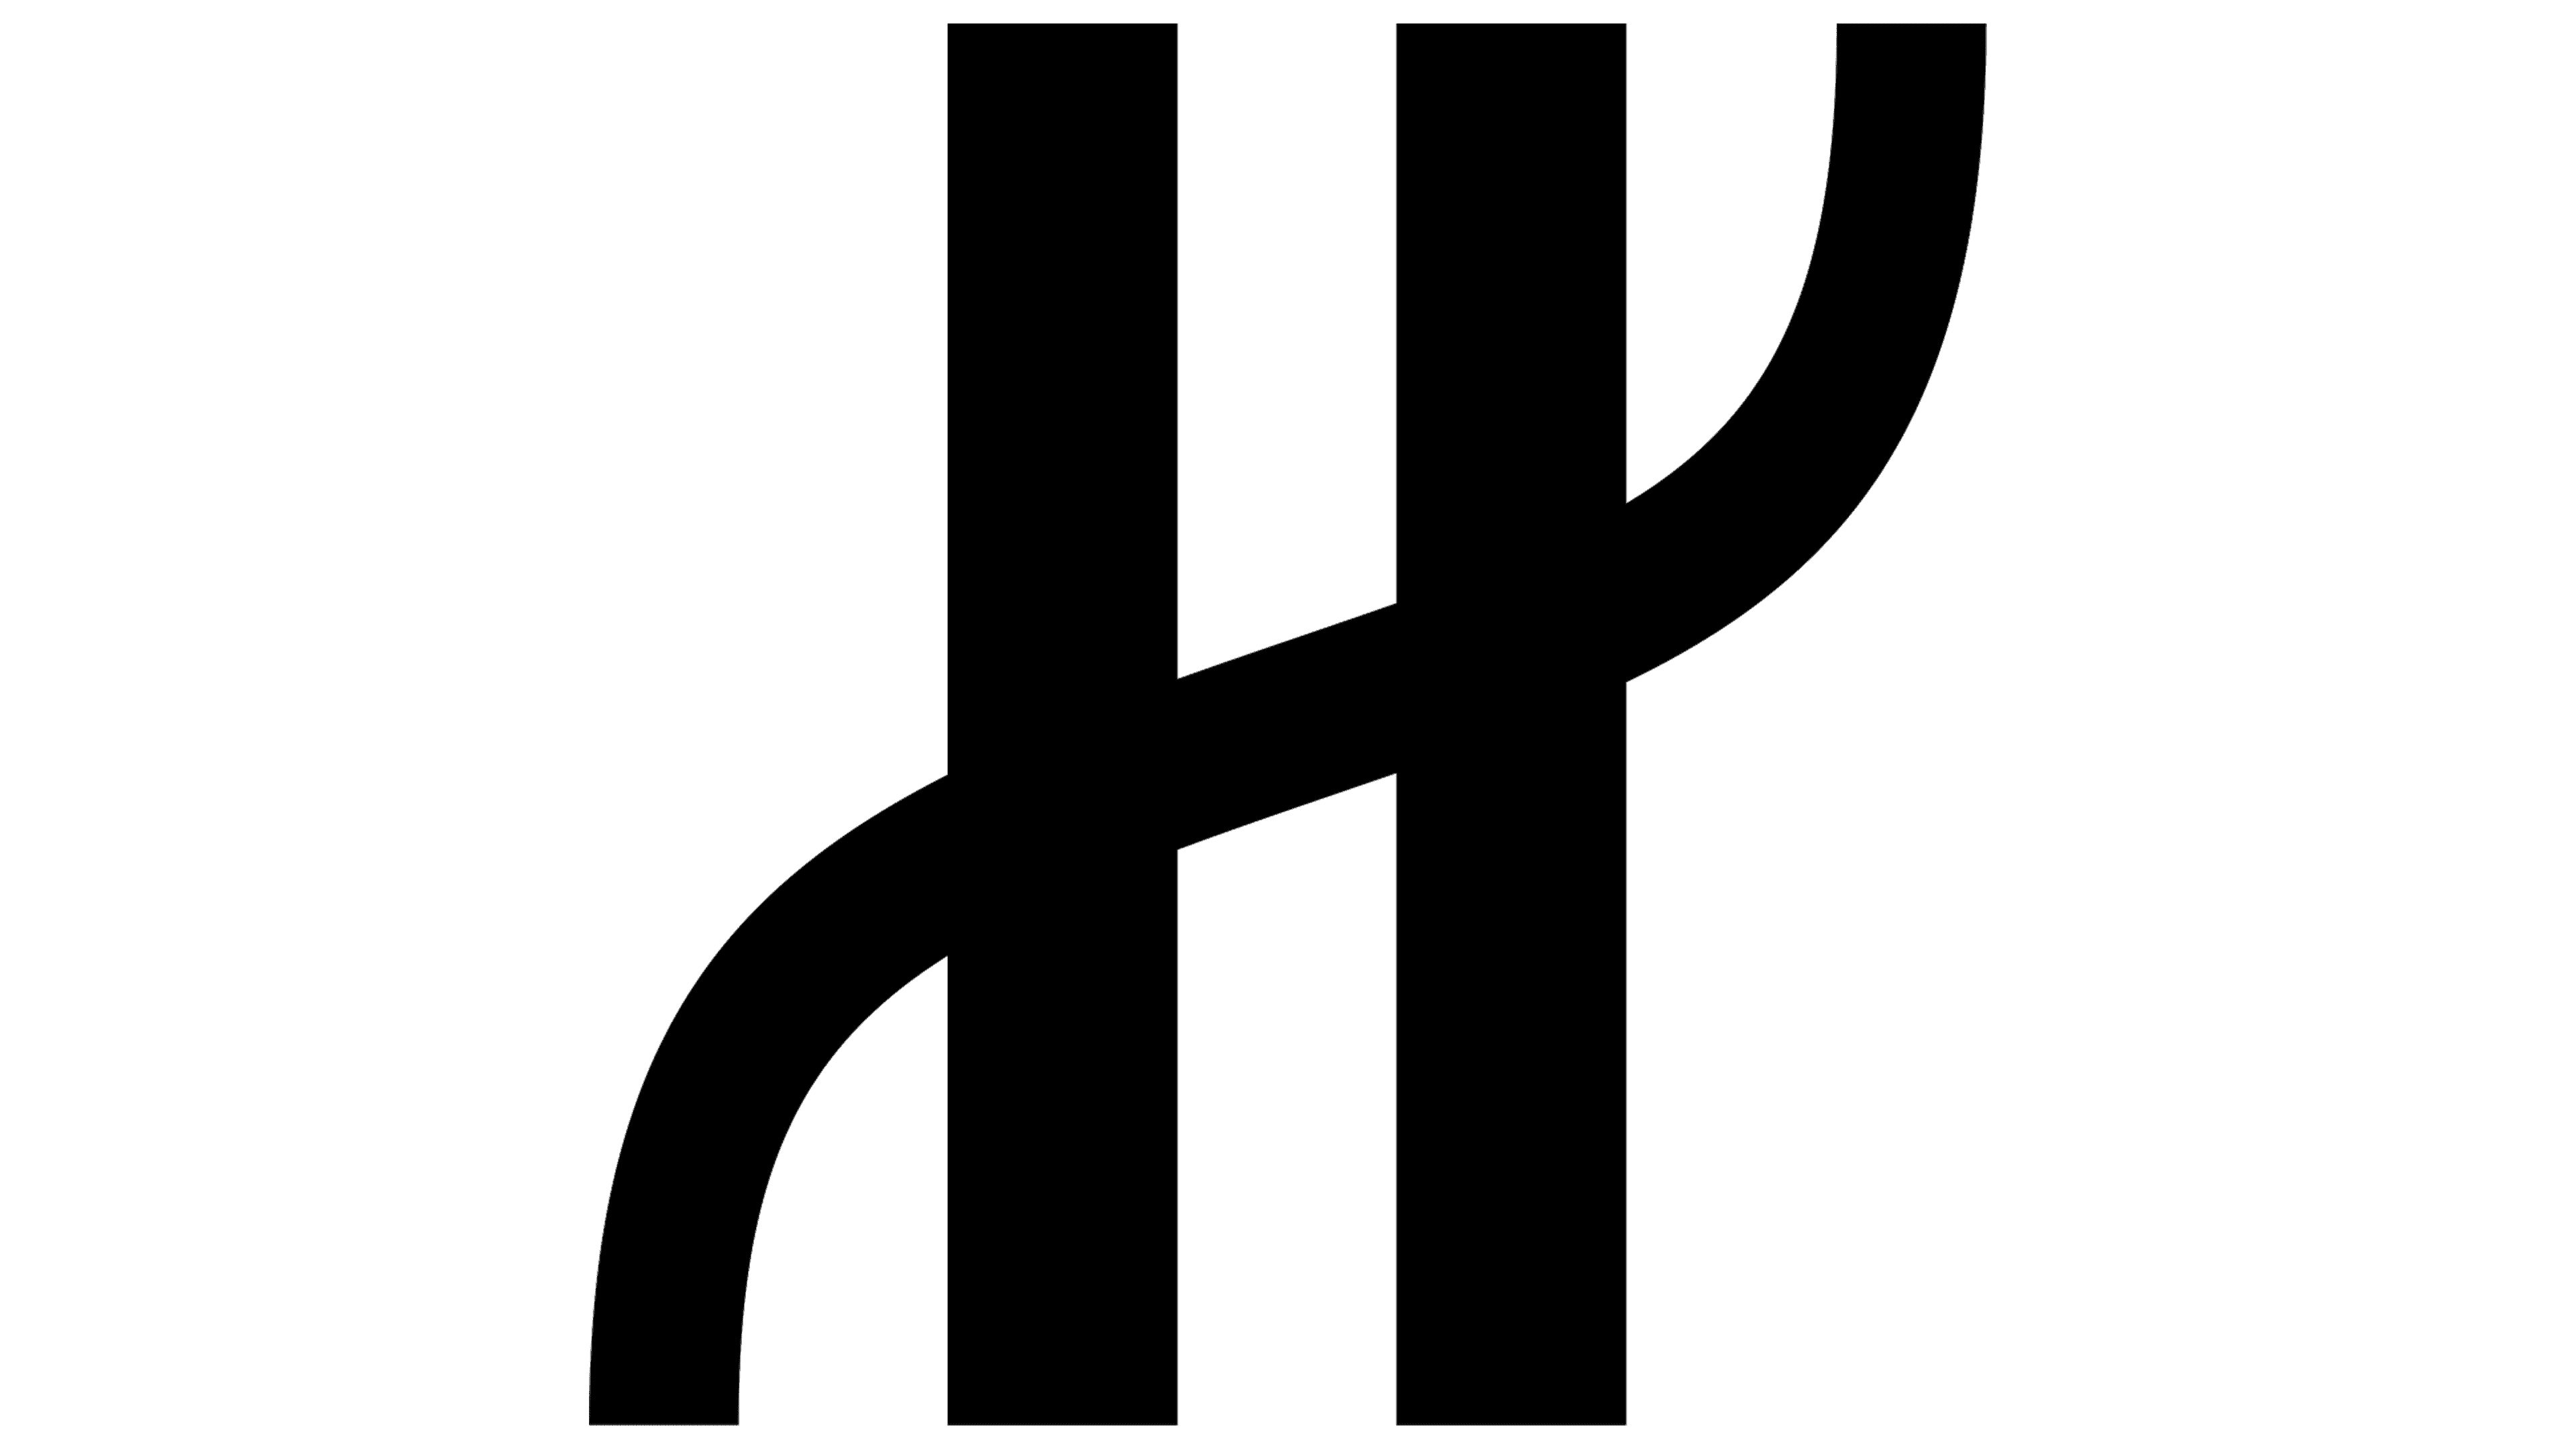 hublot logo vector